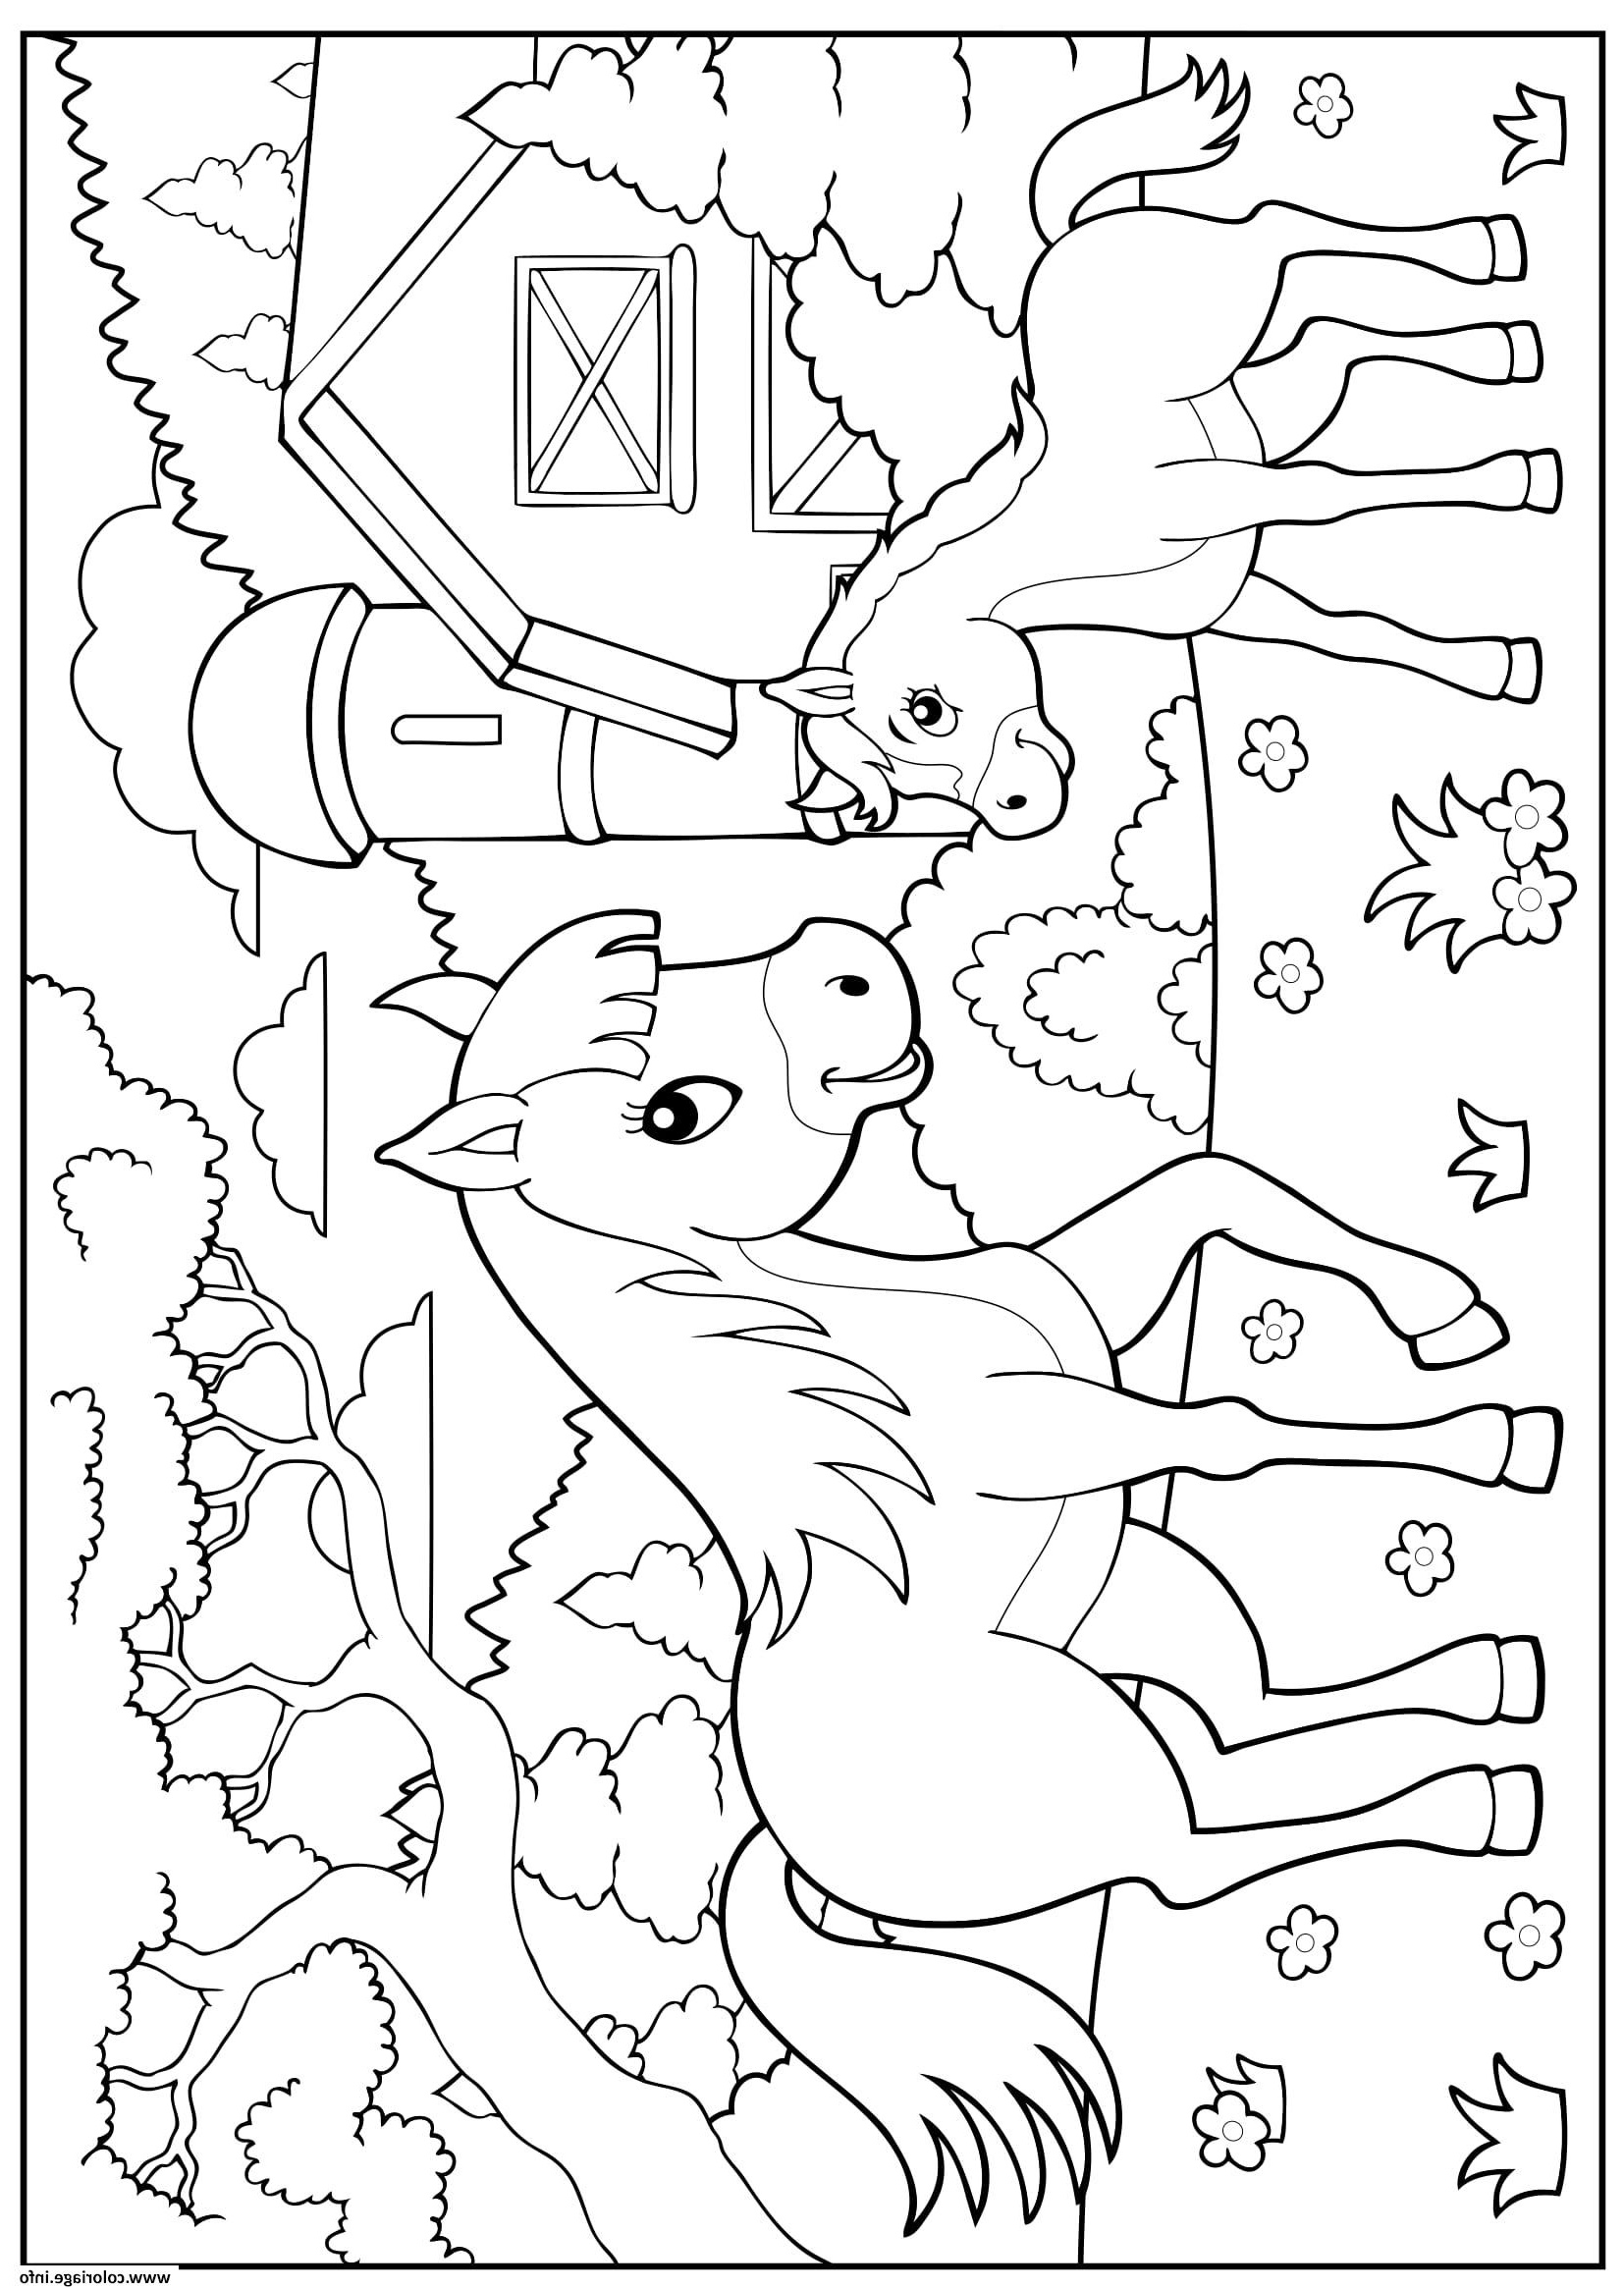 la ferme cheval poney enfant maternelle coloriage dessin